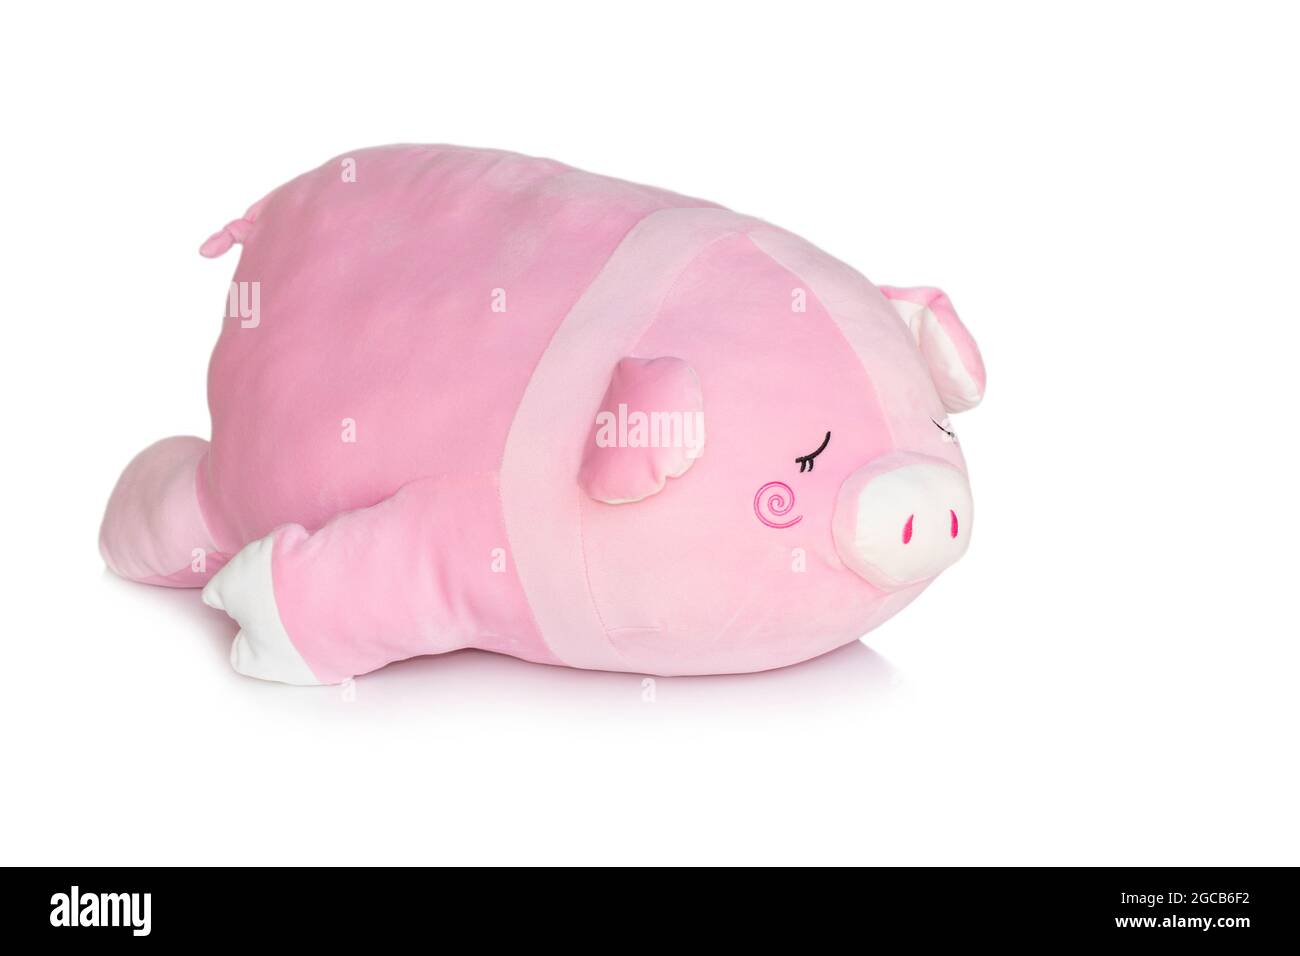 Image de poupée de porc rose isolée sur fond blanc. Poupées animales. Banque D'Images